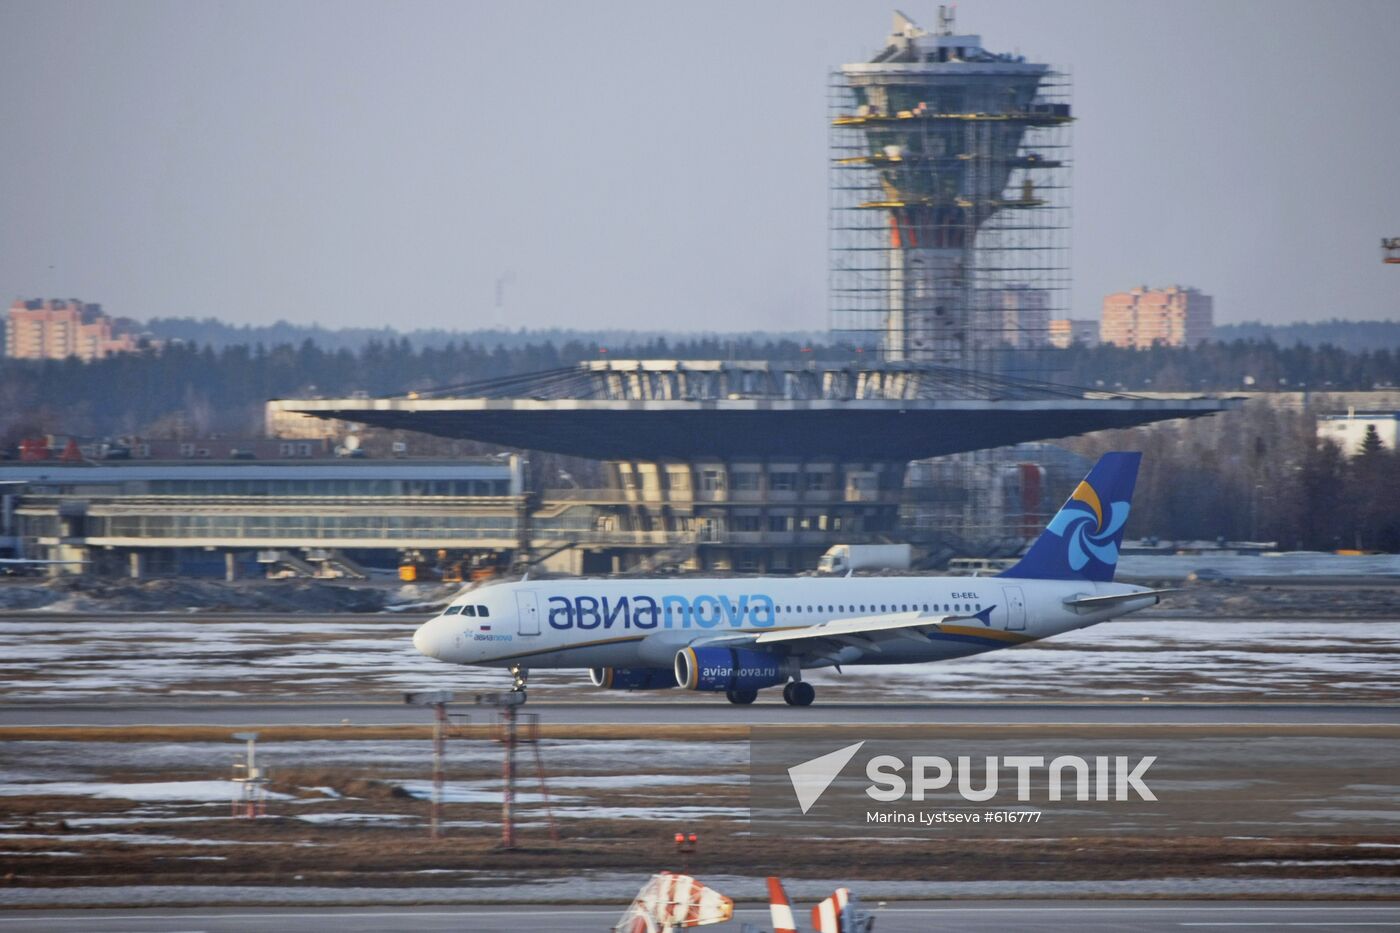 Airbus-320 at Sheremetyevo airport